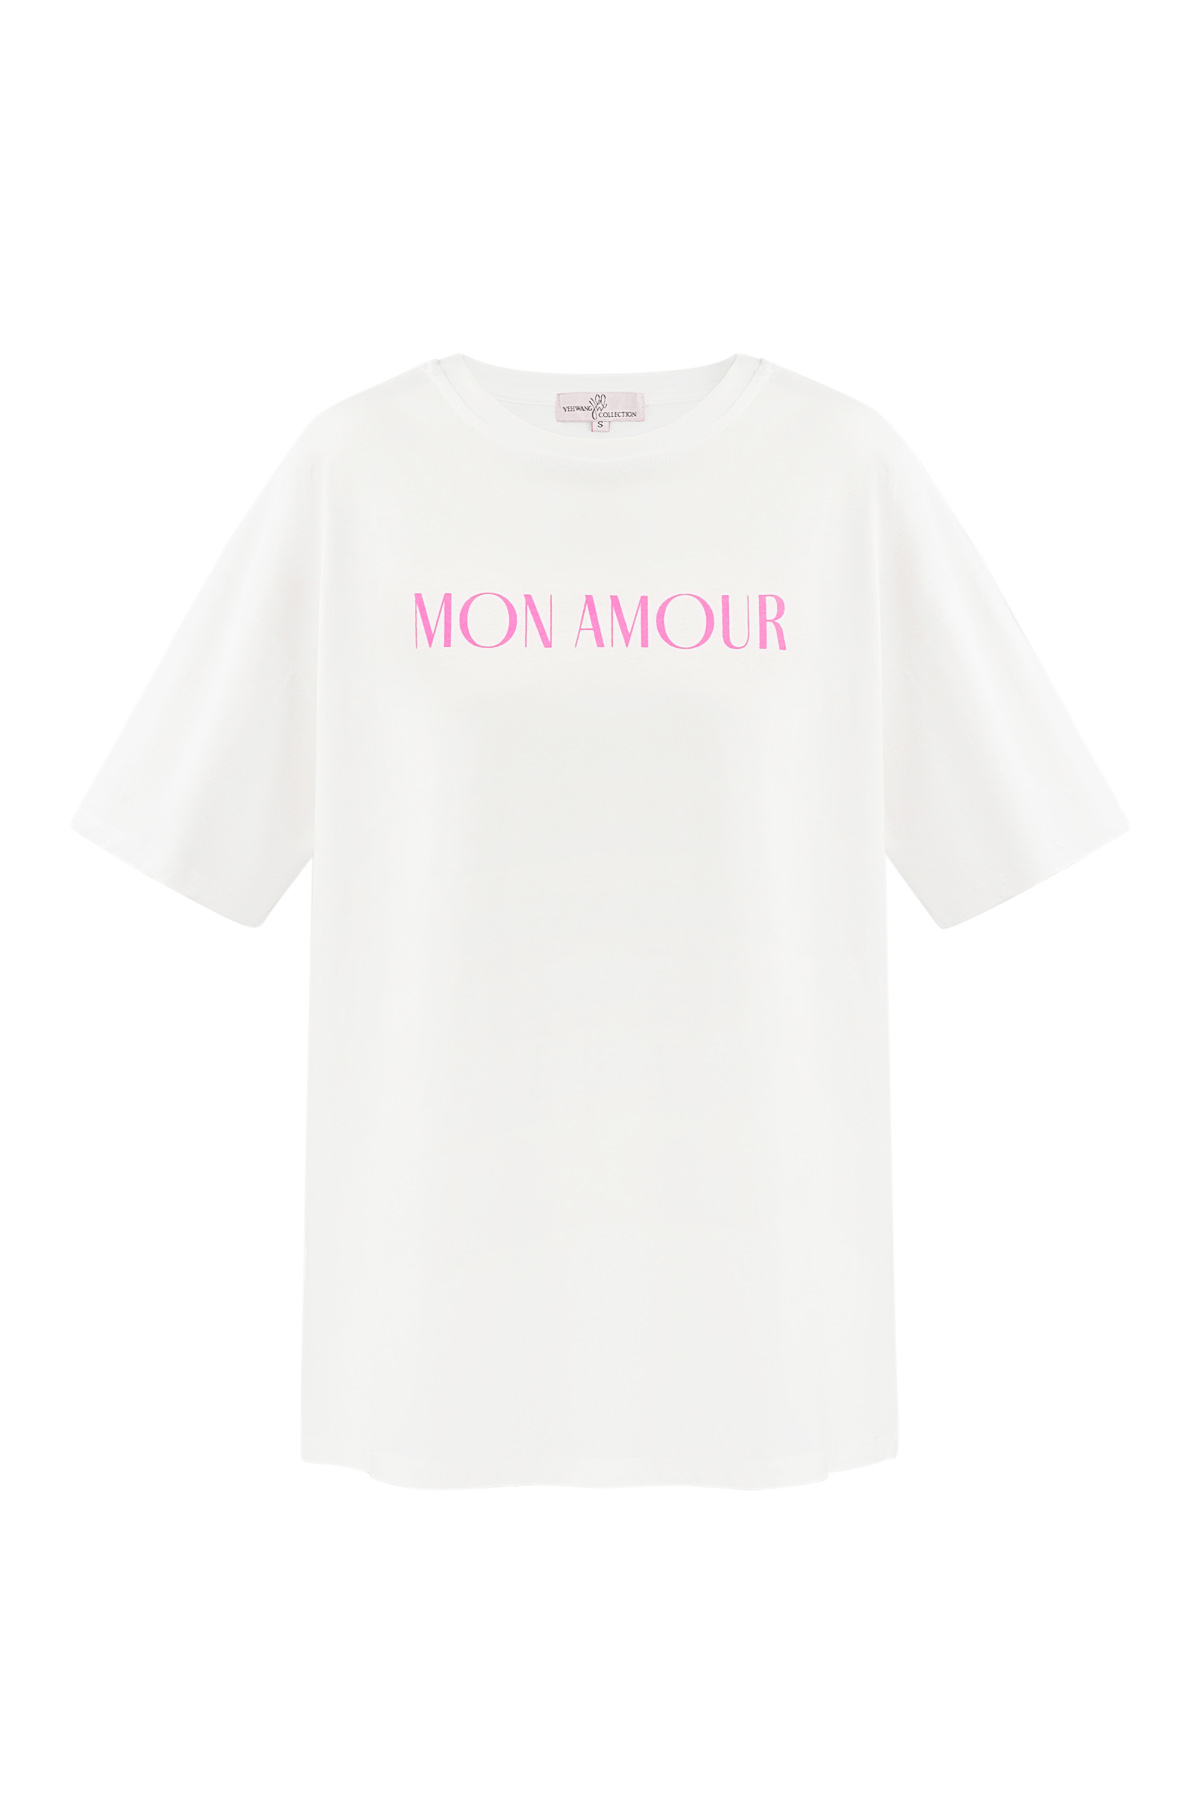 T-shirt mon amour - wit